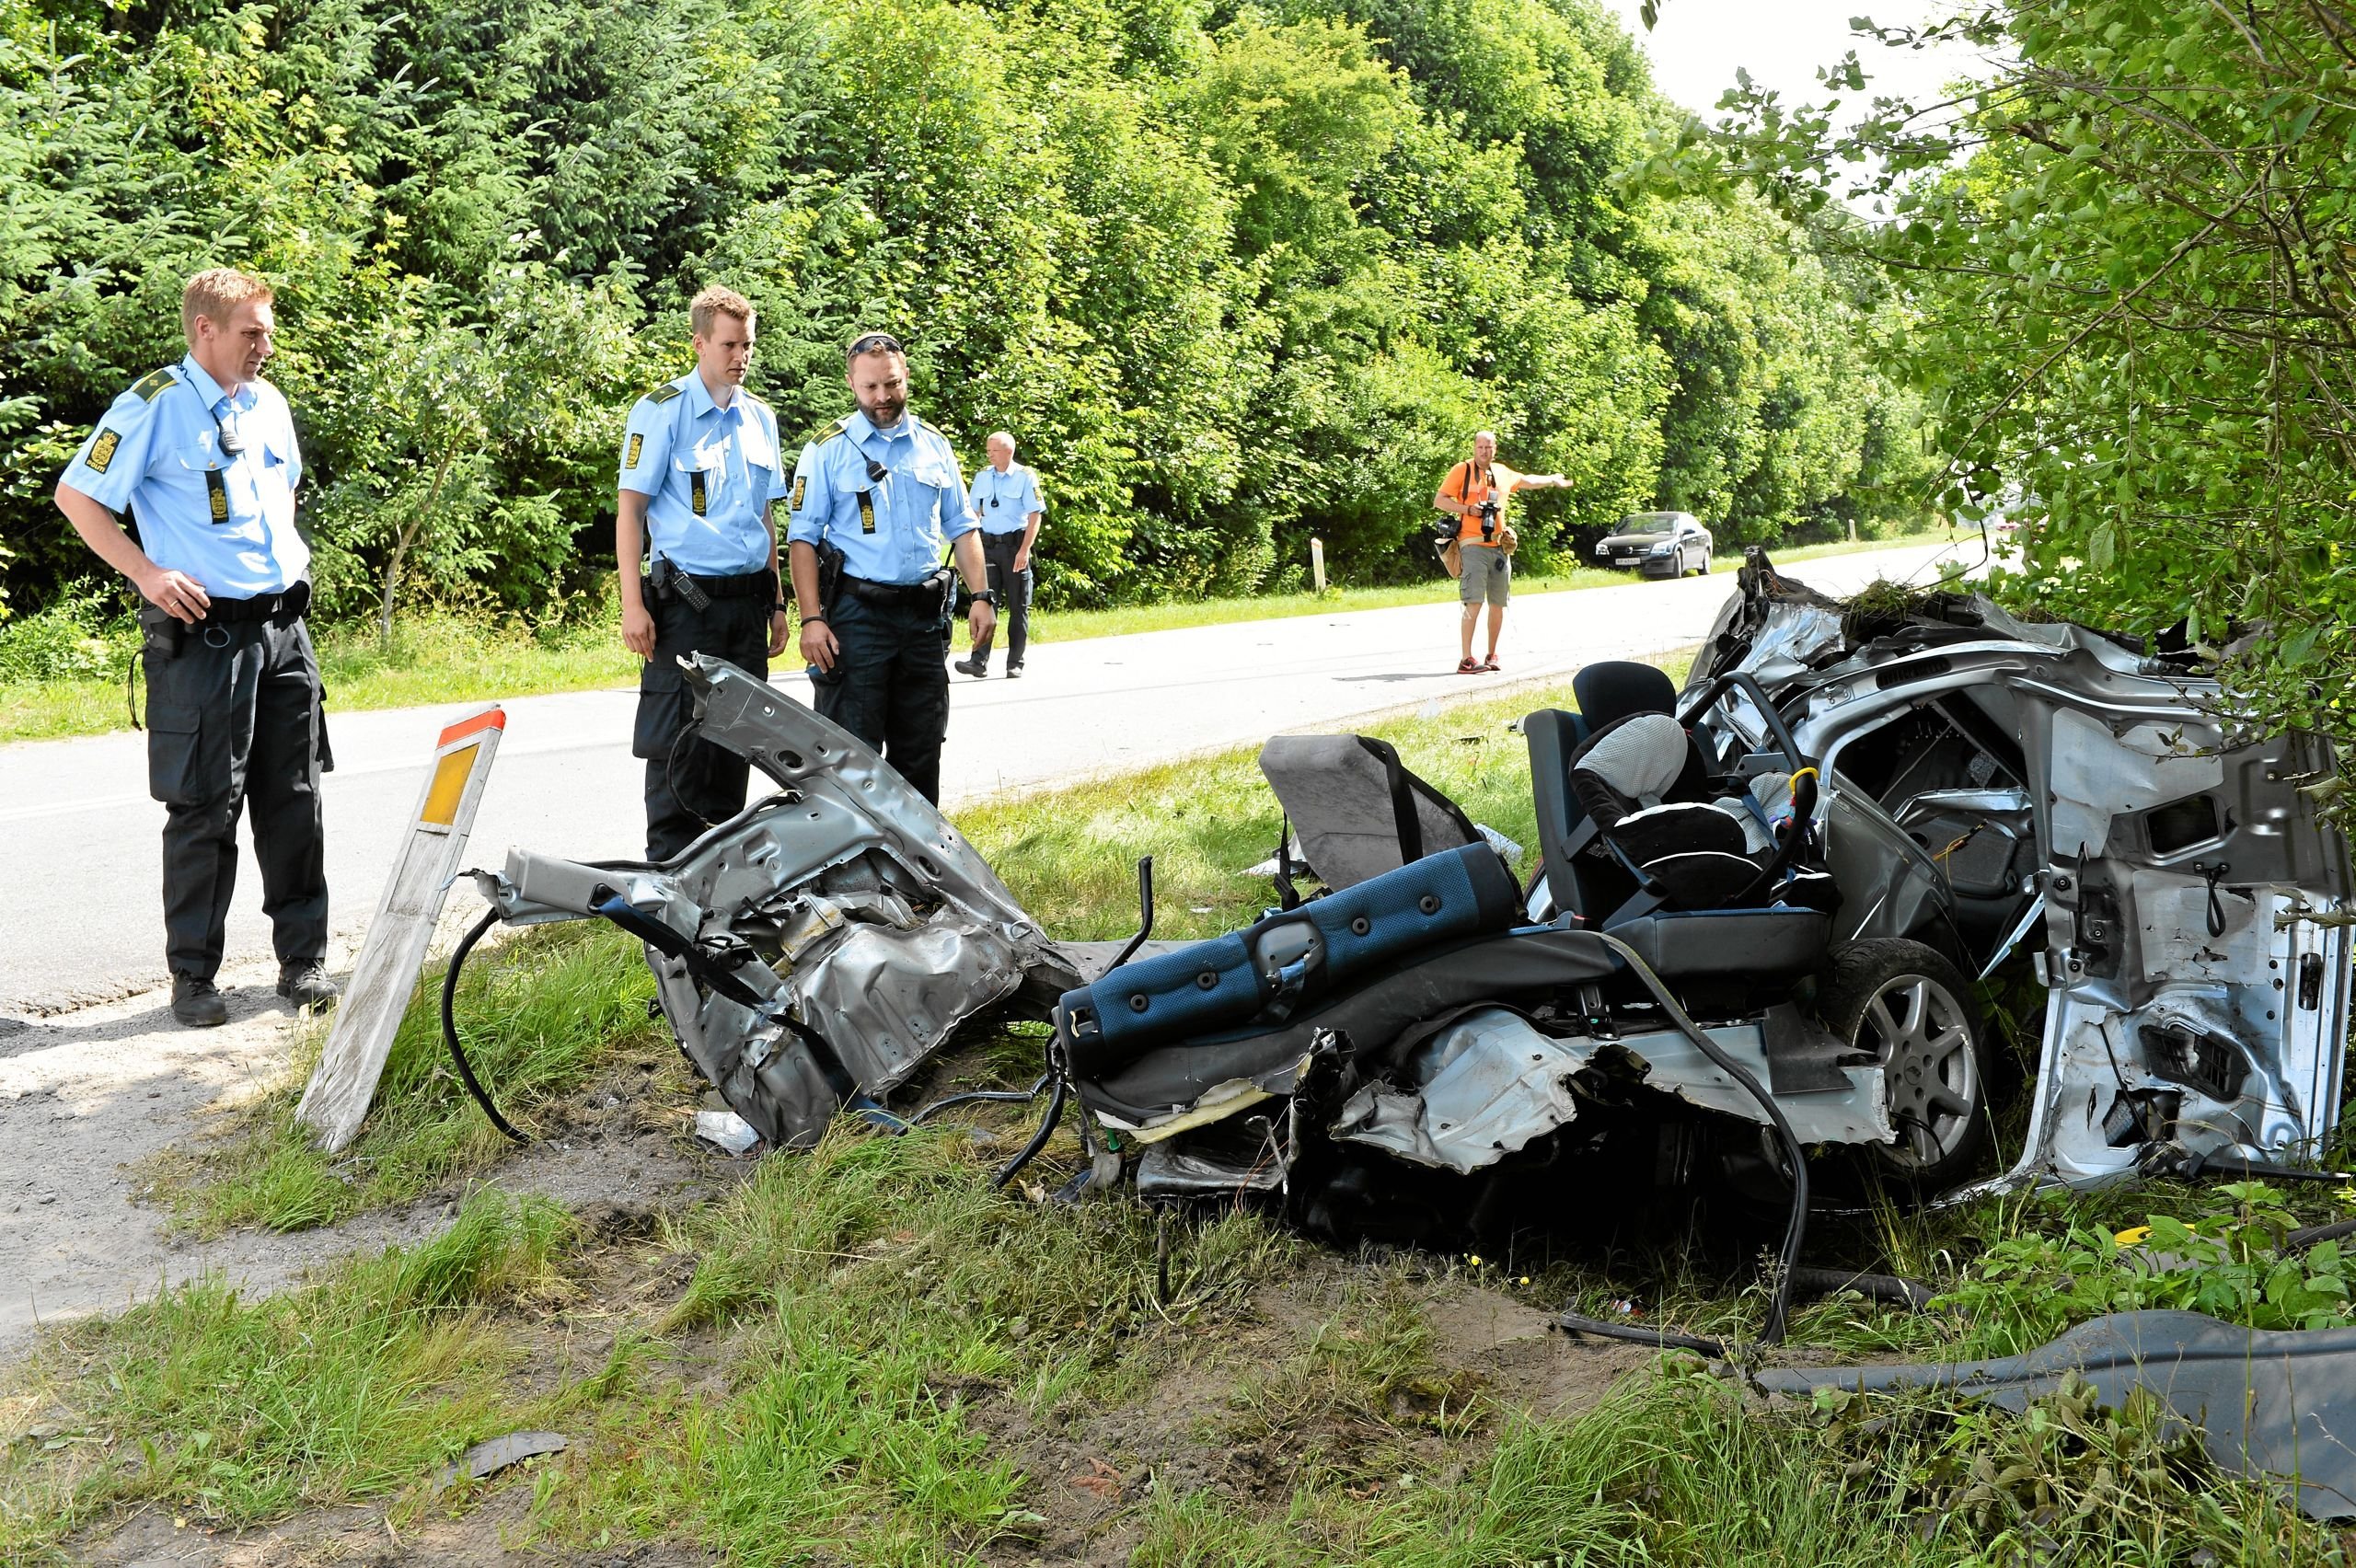 Bilinspektør: Høj fart årsag til ulykke